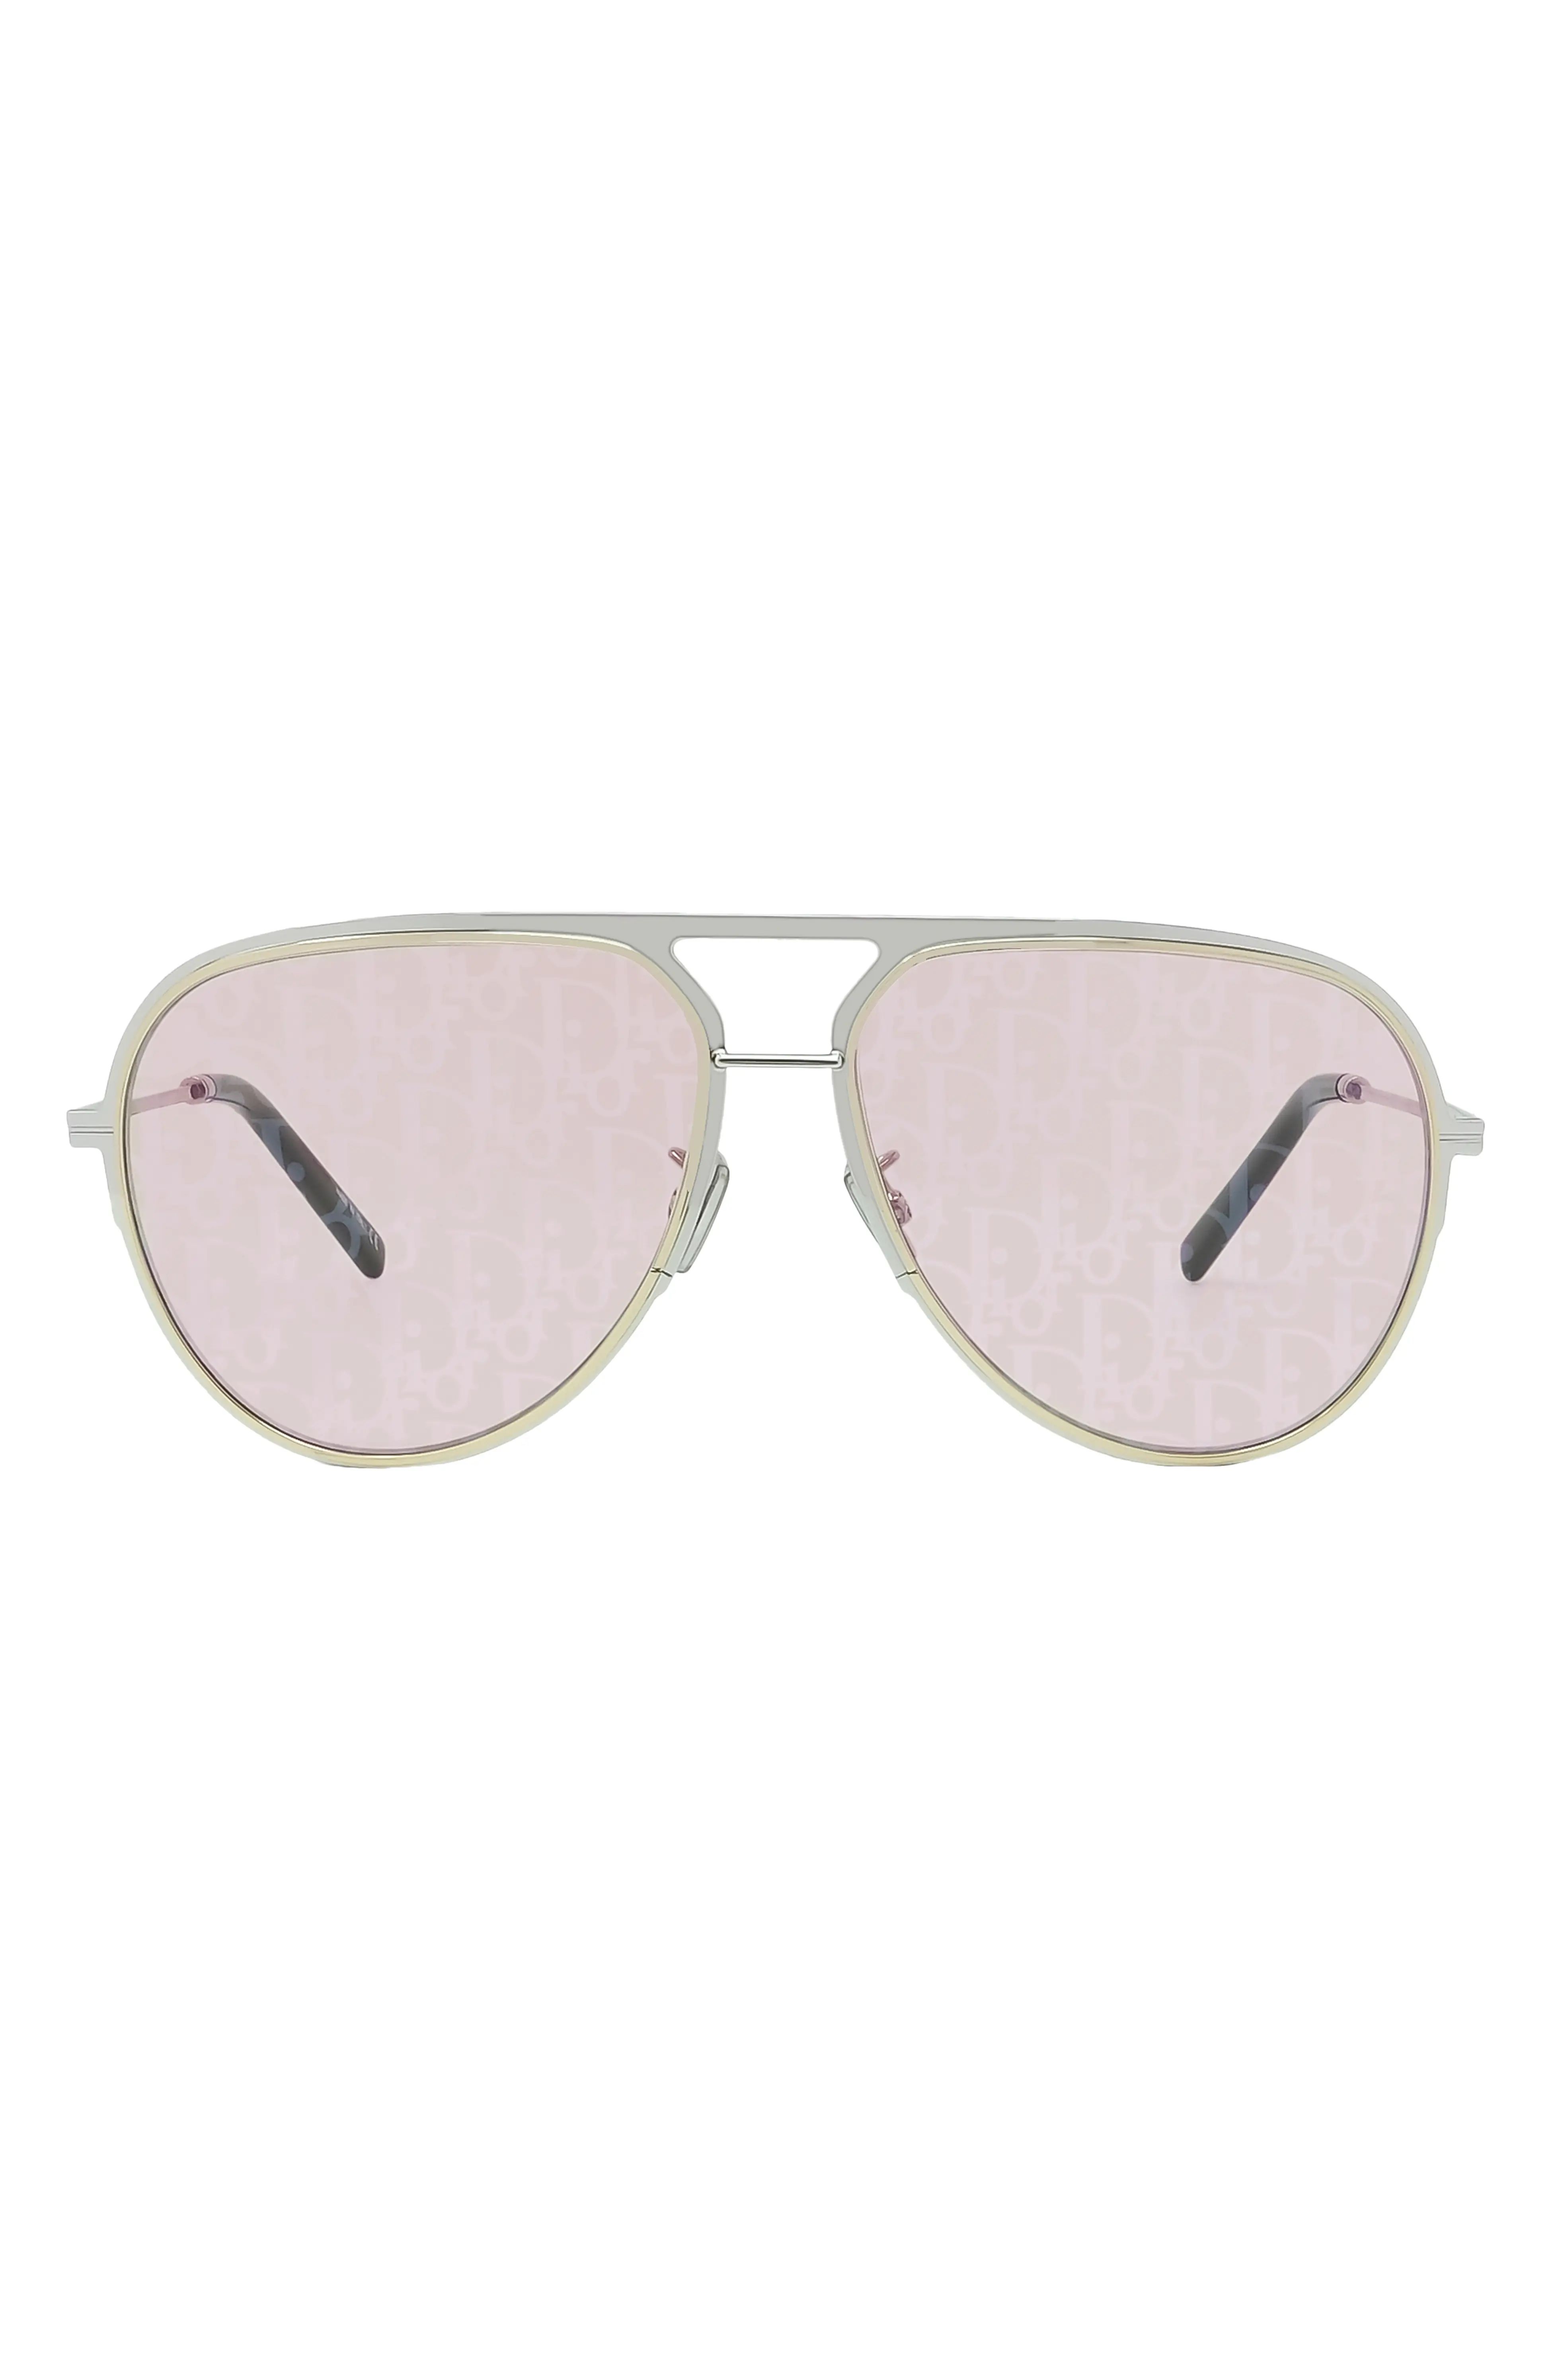 The DiorEssential A2U 60mm Mirrored Pilot Sunglasses | Nordstrom